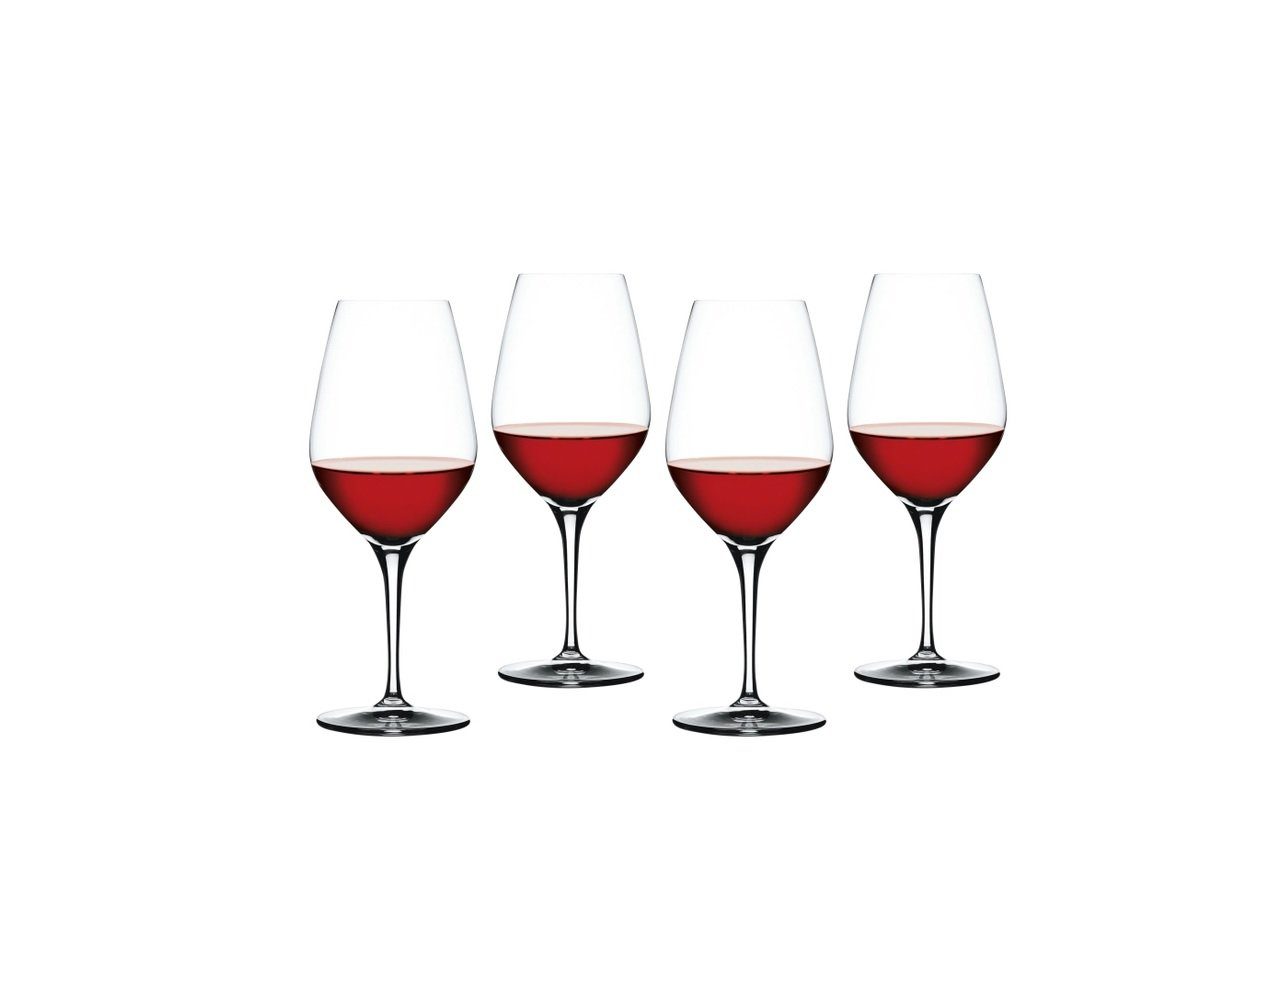 SPIEGELAU Weinglas Spiegelau Authentis Rotwein (4er Set), Glas